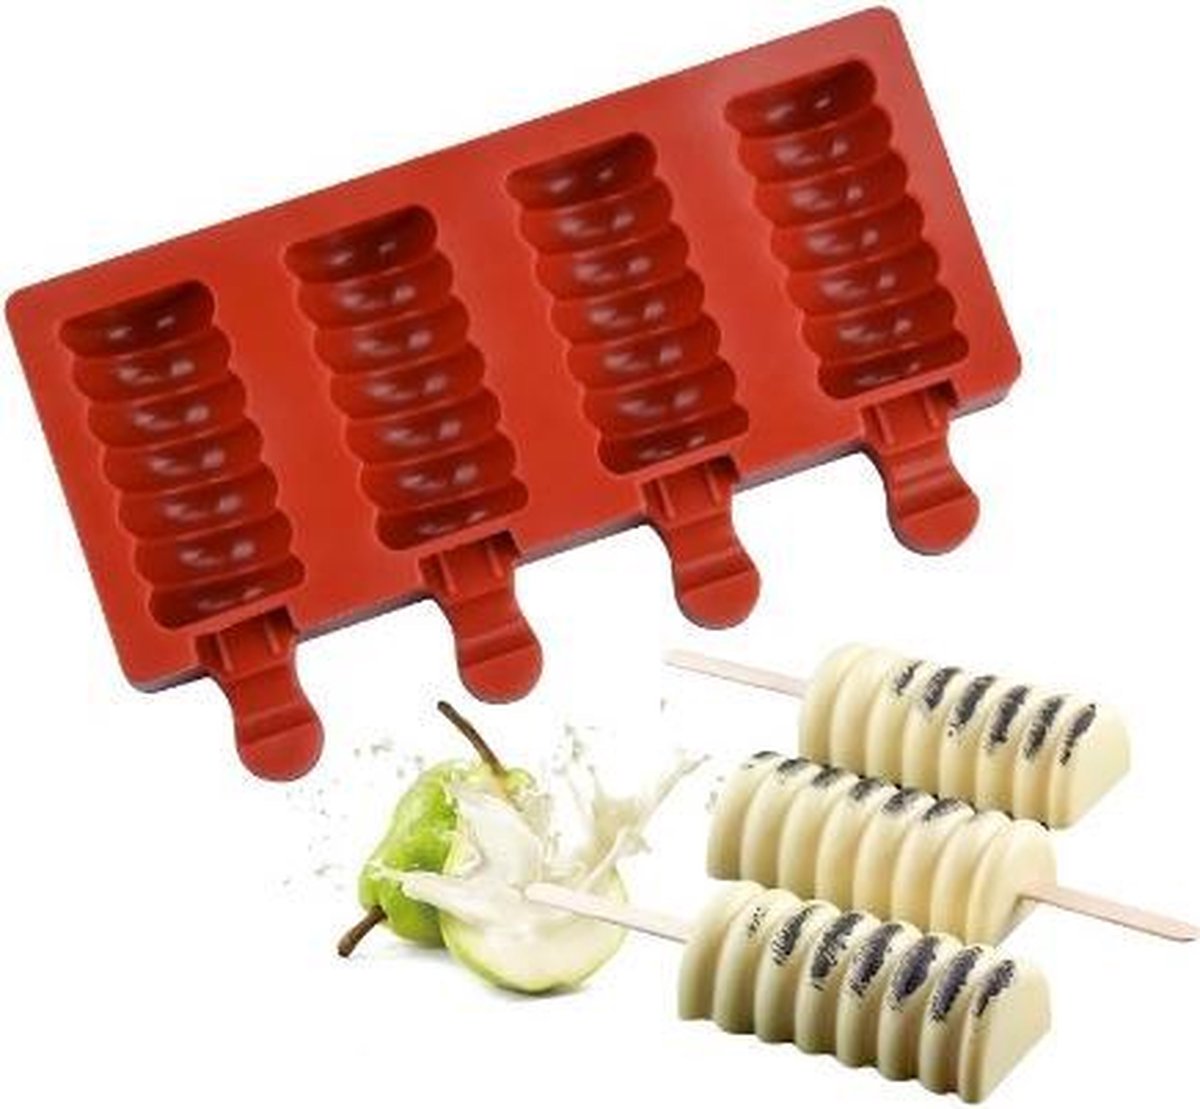 Twister Magnum Siliconen Bakvorm - Popsickle - Magnums Maker - Ijs Maker - Ijs mold - Chocoladevorm - Bakvormen - Siliconen mal - Kleur Bruin